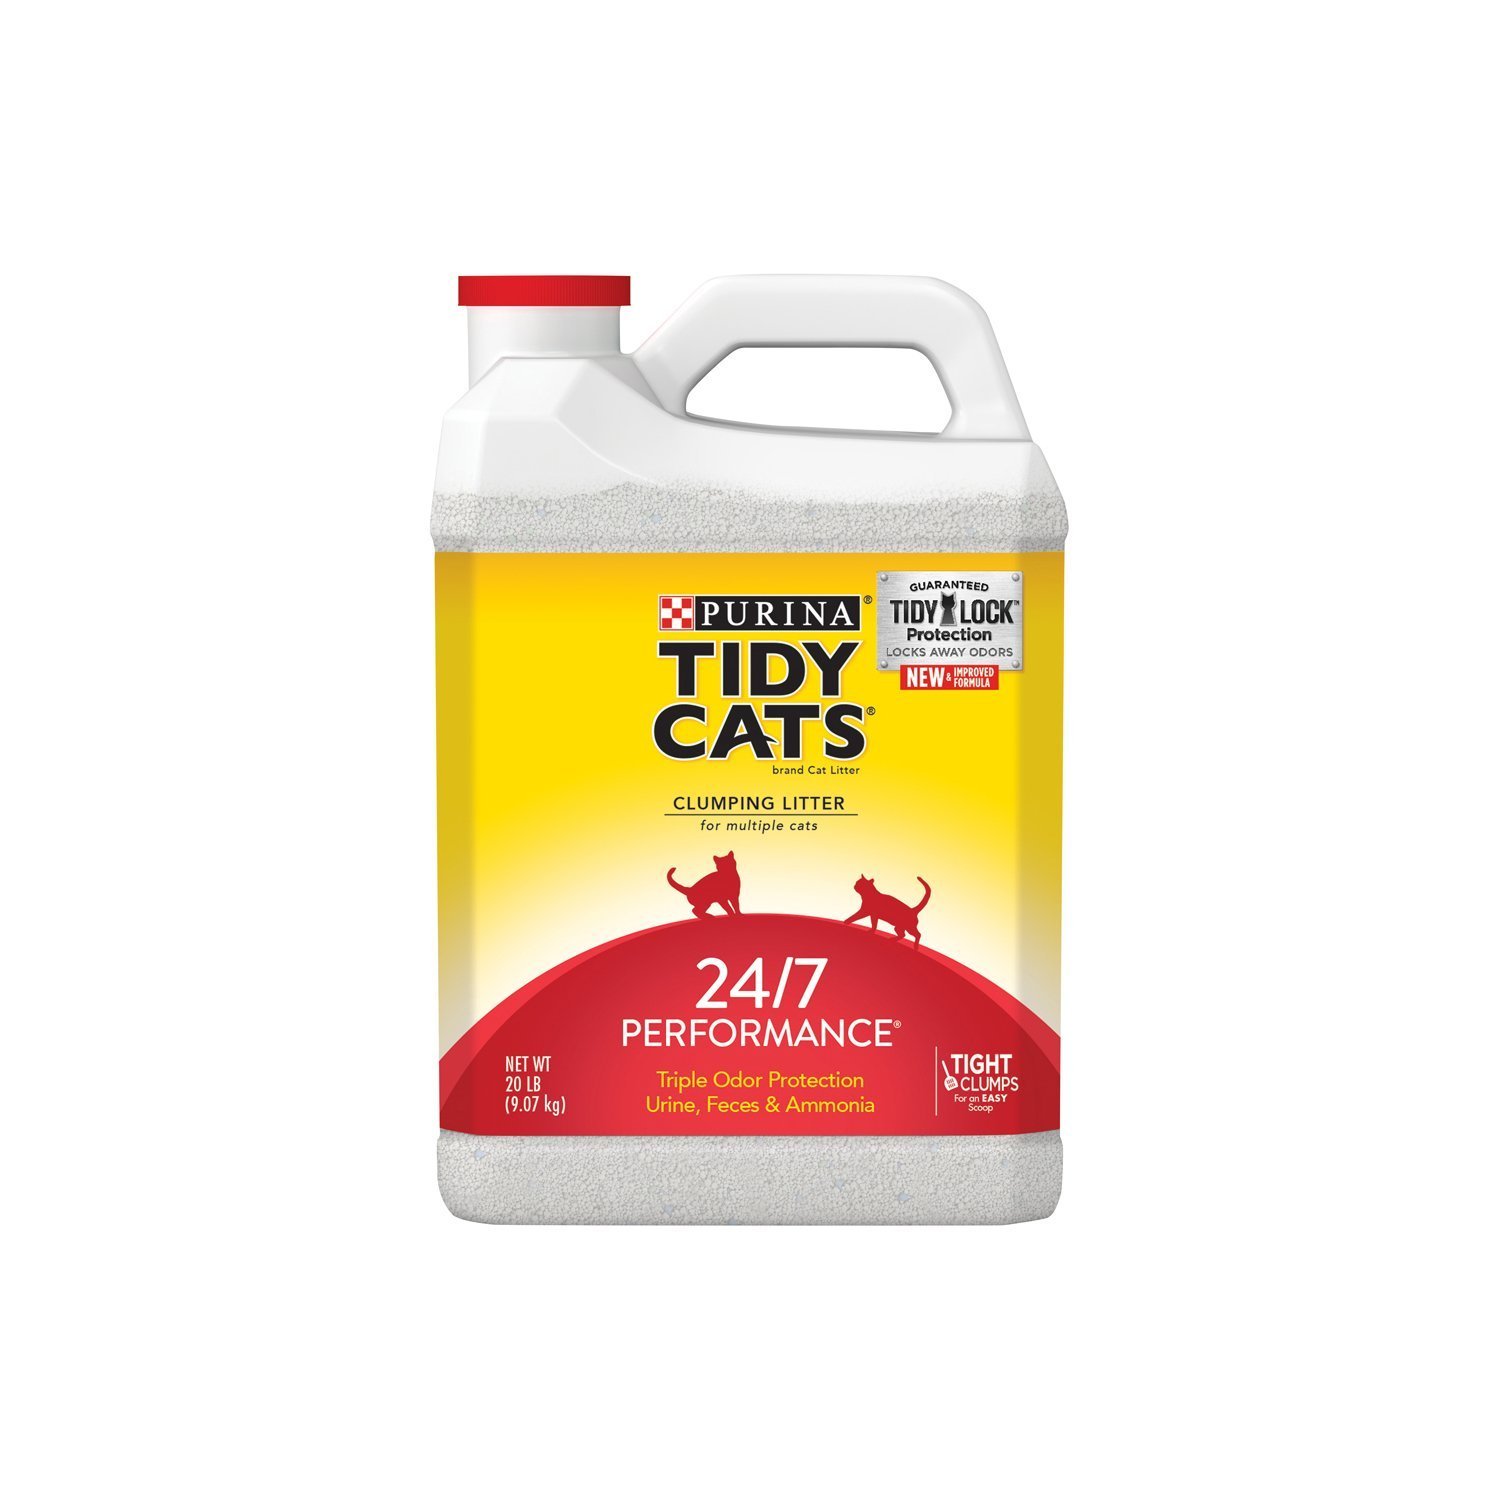 Purina Tidy Cats Cat Litter 20 lb jug 2 Pack 13.88